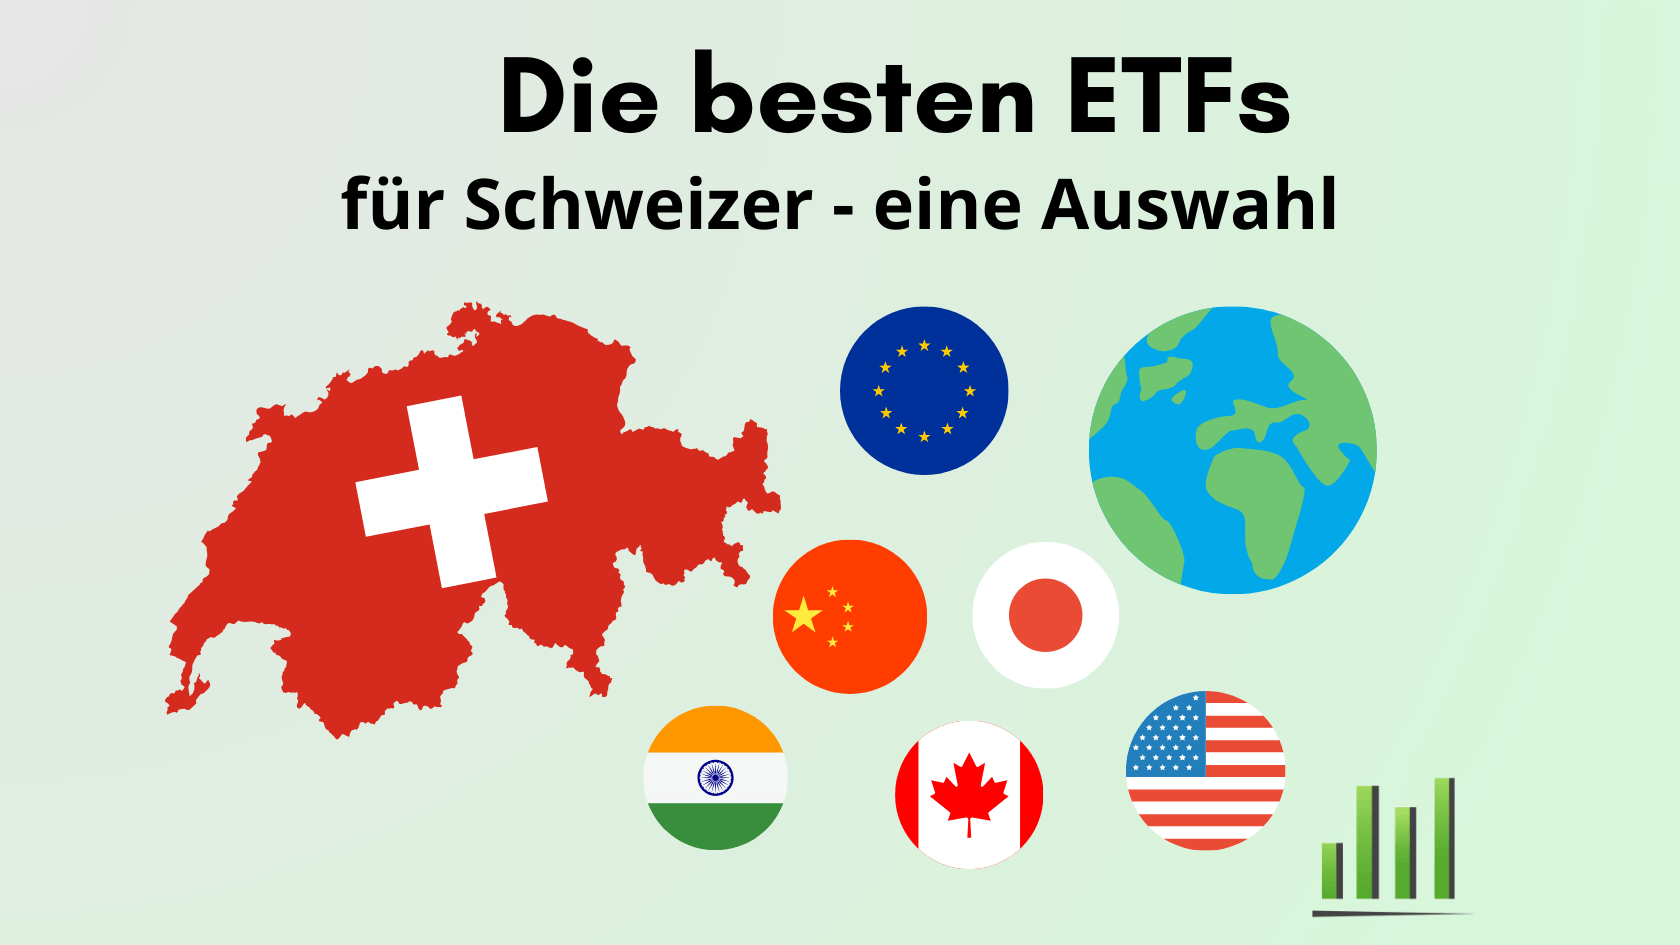 Eine Liste beste ETFs Schweiz für Schweizer